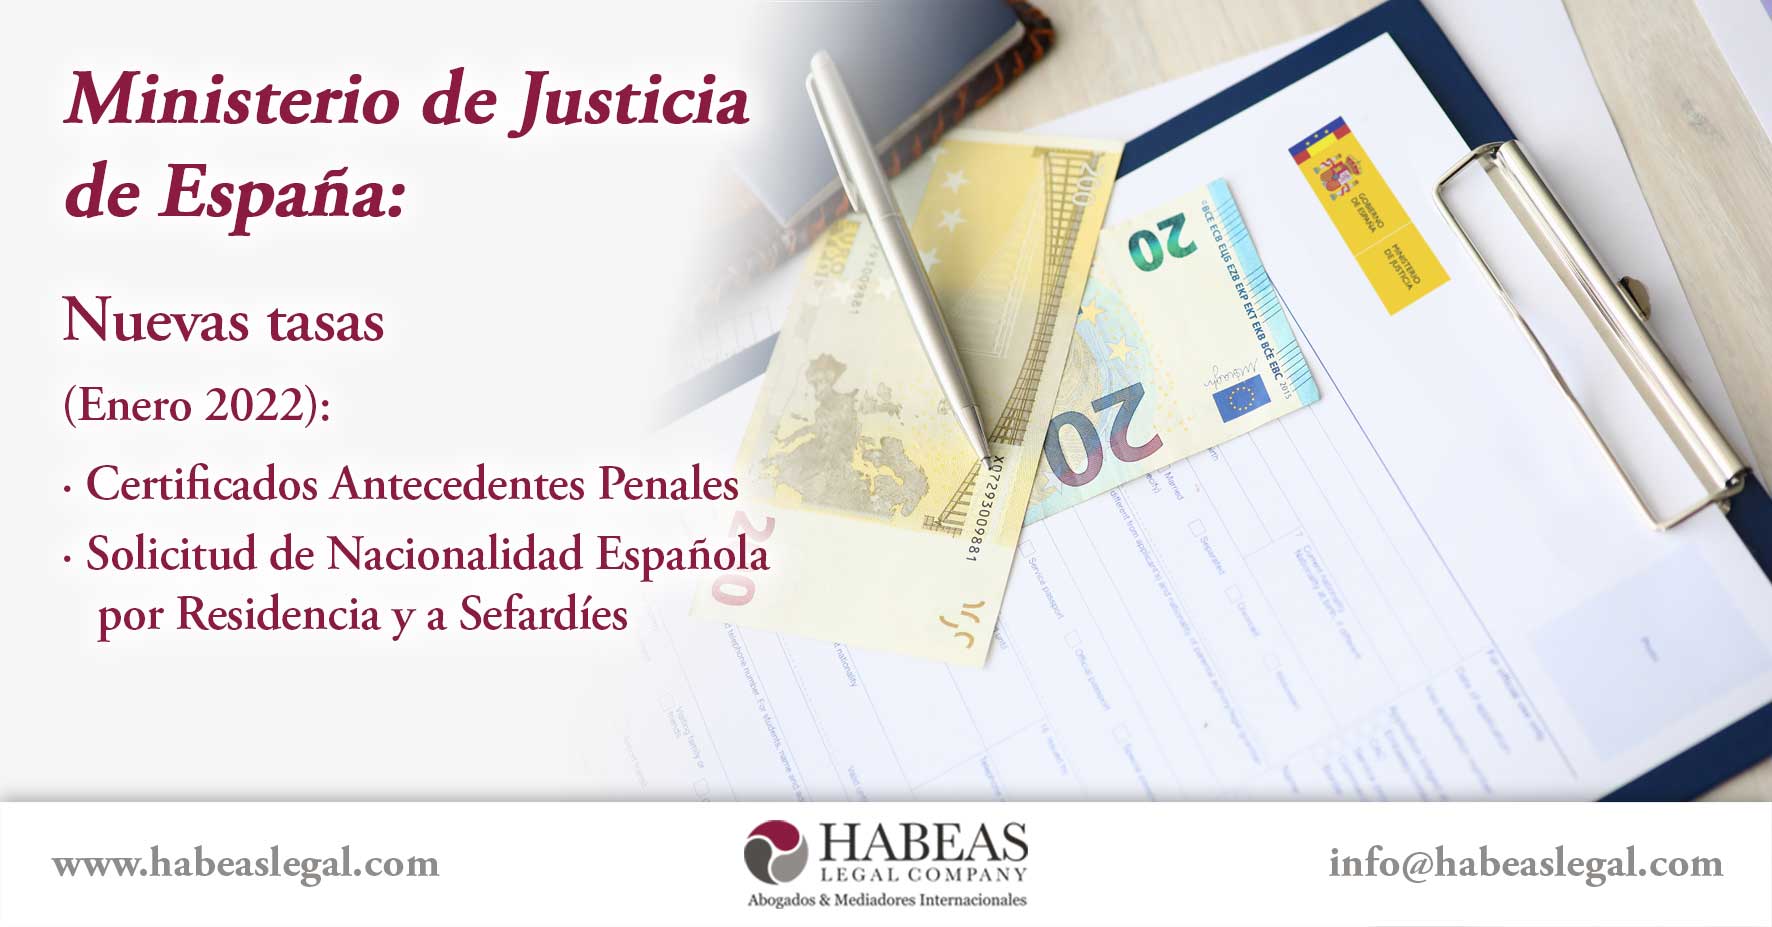 Ministerio Justicia tasas 2022 Habeas Legal - Abogados Internacionales especializados en Extranjería, Inmigración y Laboral